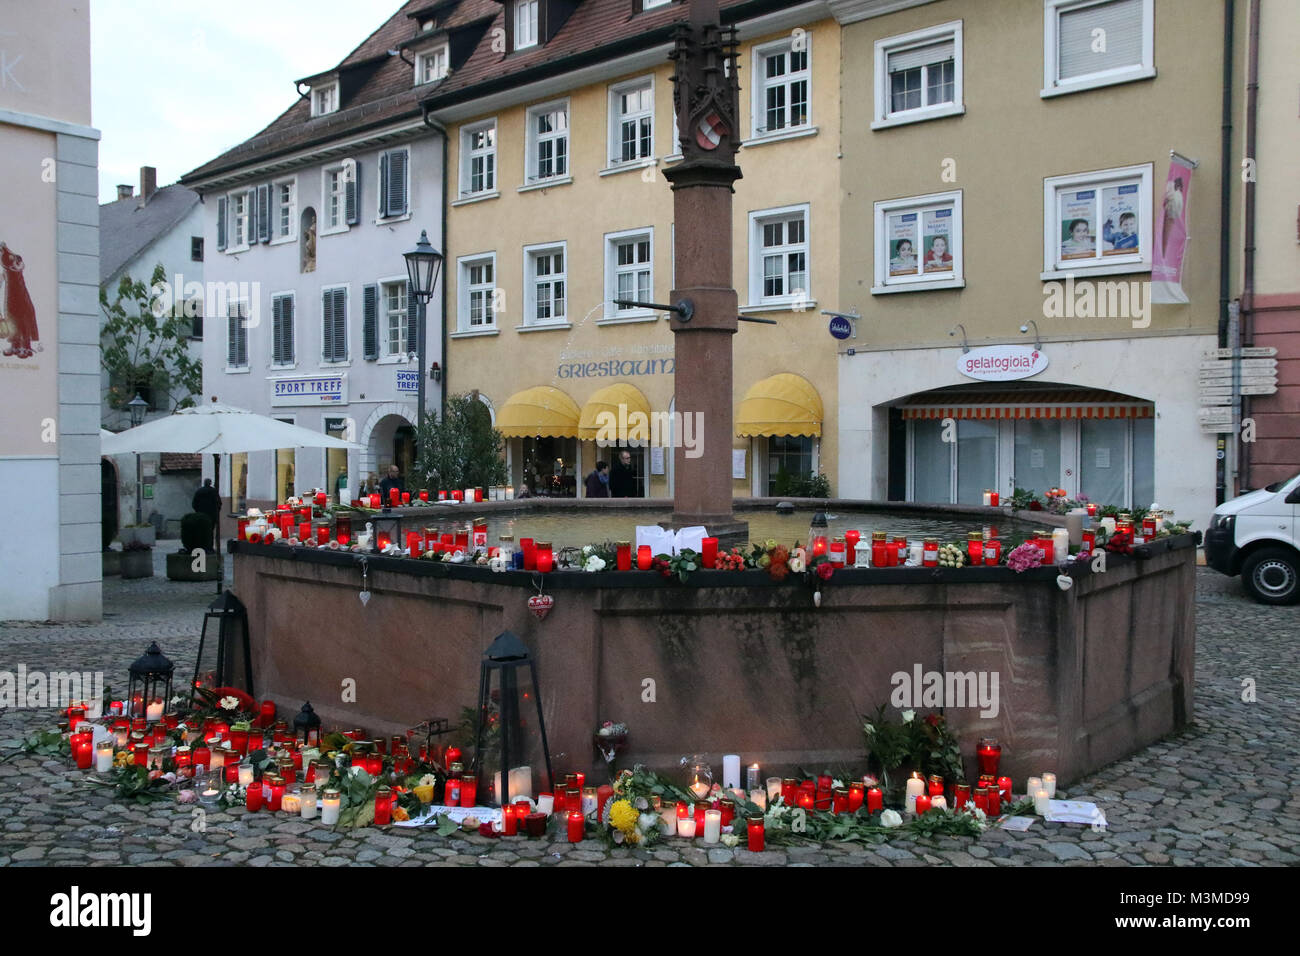 Der Stadtbrunnen von der Trauer Stätte Endingen, für die ermordete  Mitbürgerin Carolin Gruber - Mit großer Trauer und Bestürzung hat die  Bevölkerung der Stadt Endingen, aber auch die ganze región auf den